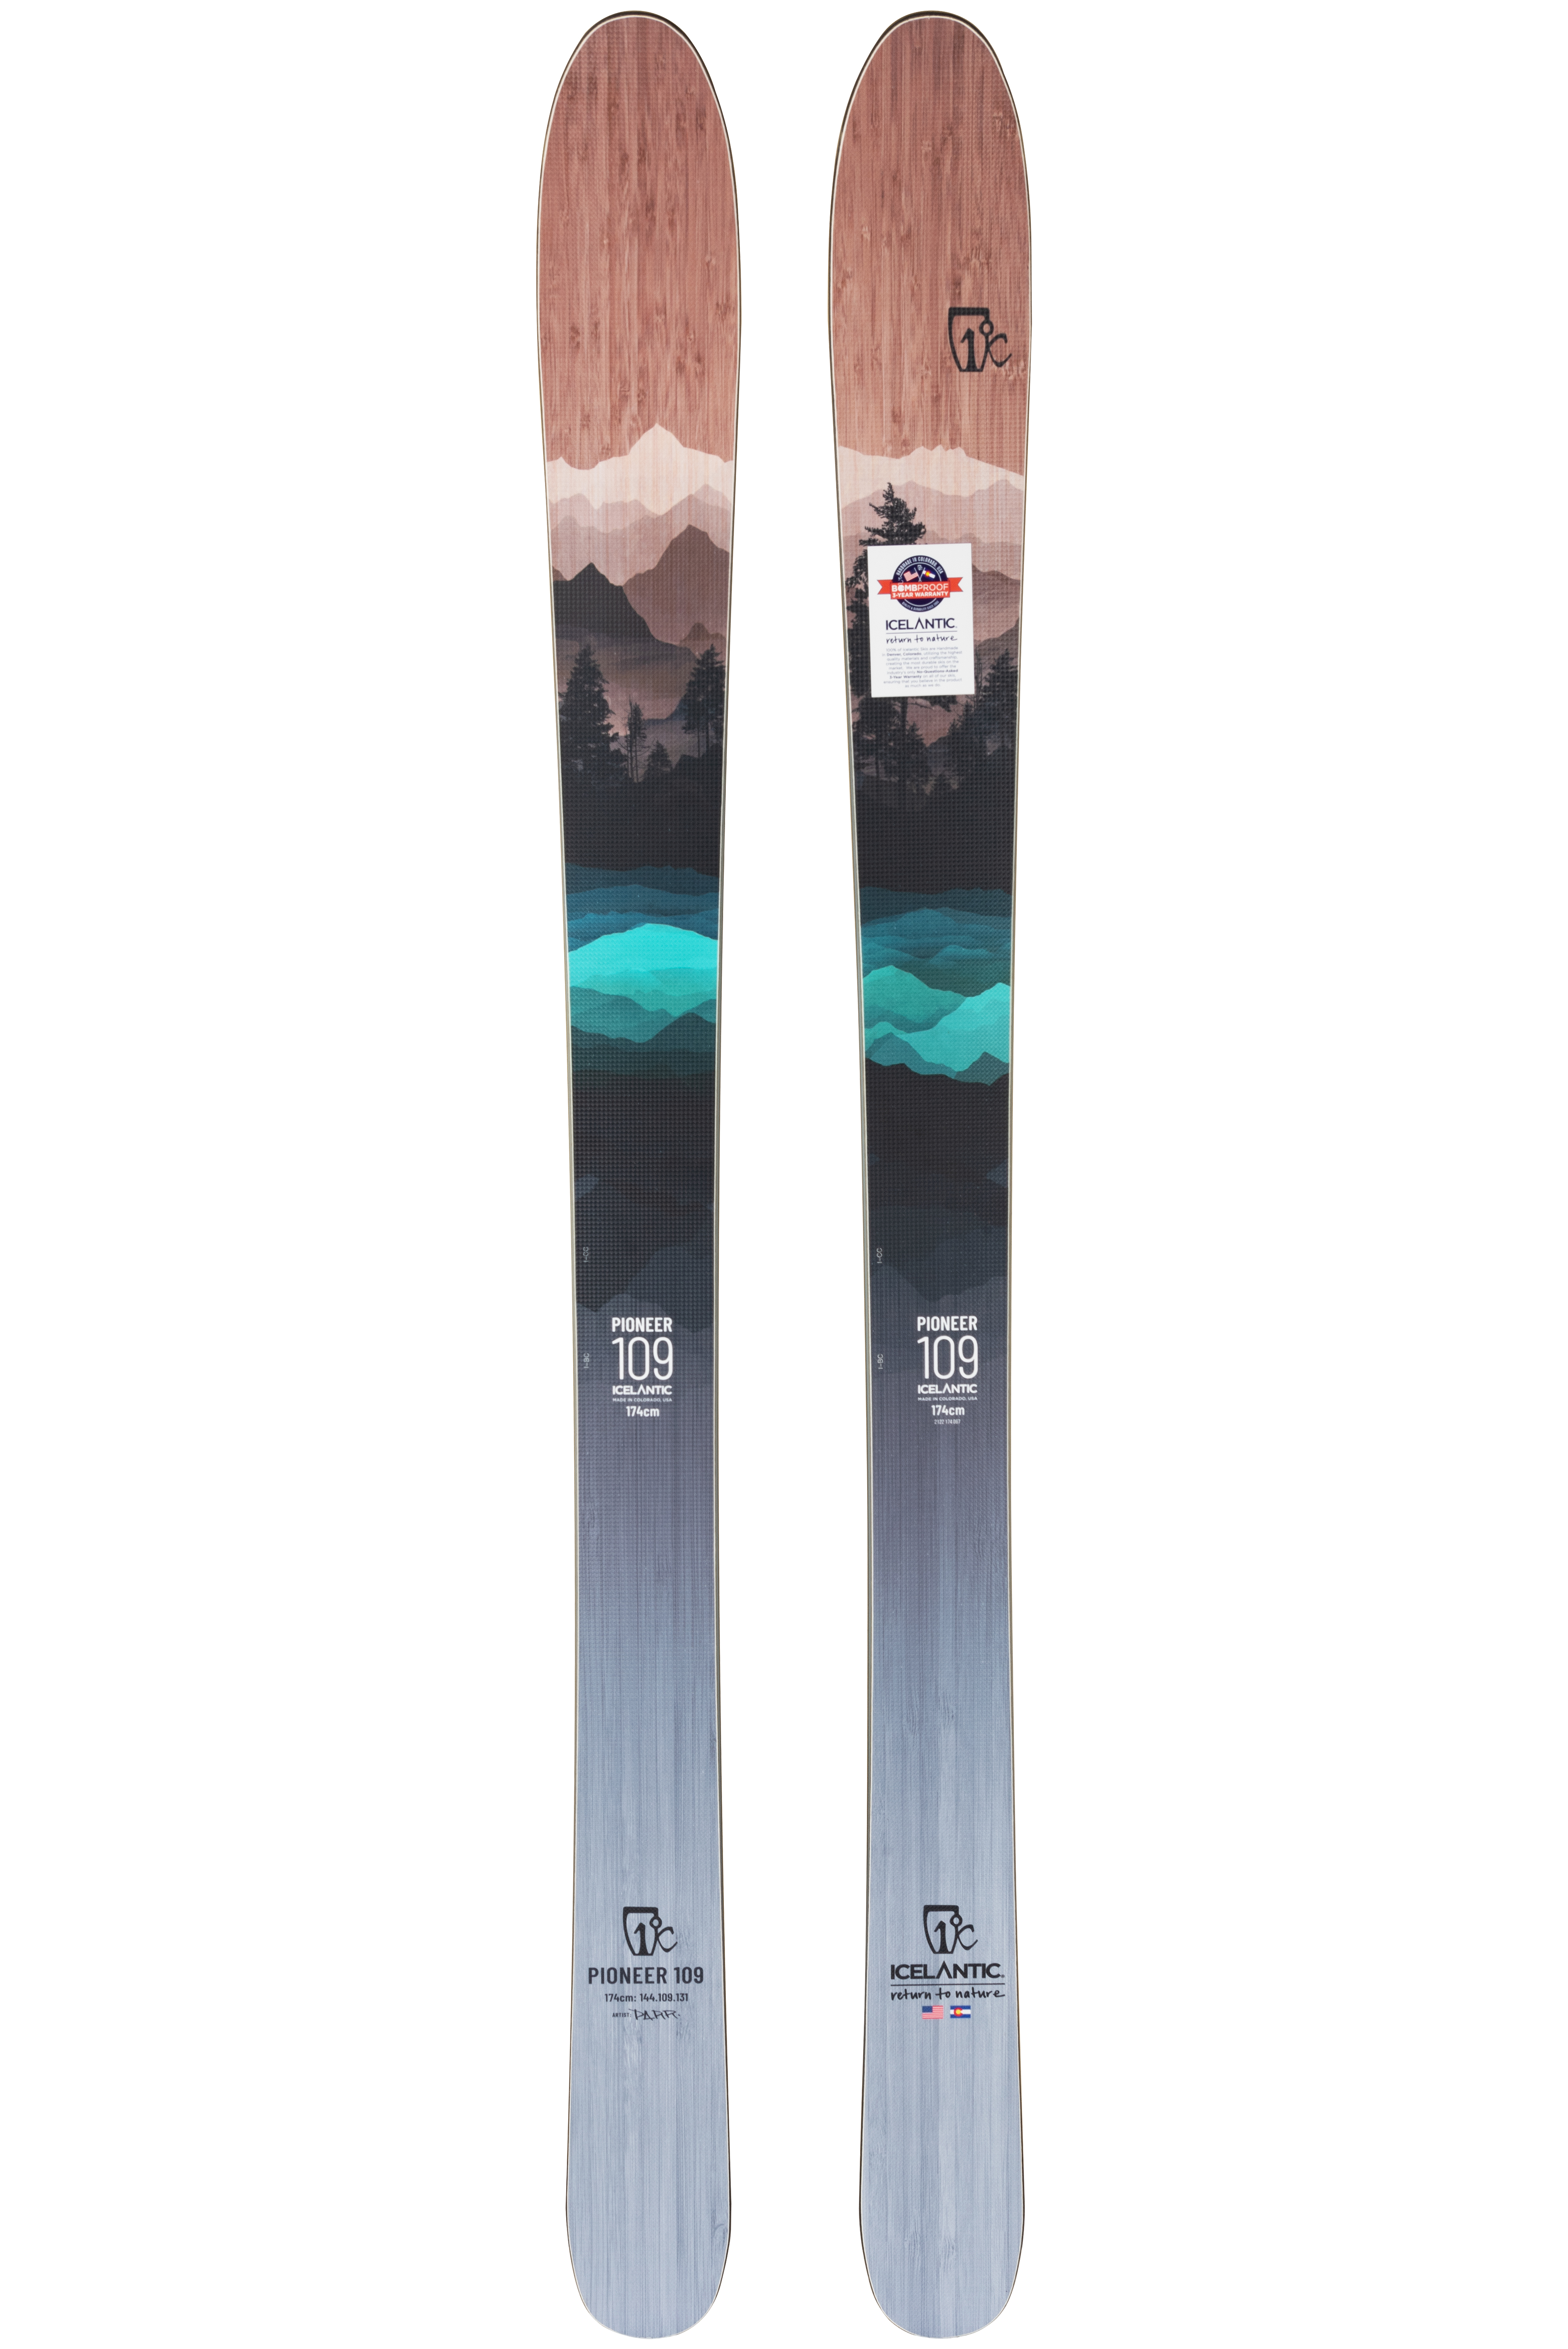 Мужские лыжи Icelantic Pioneer 109 2021/2022 182cm